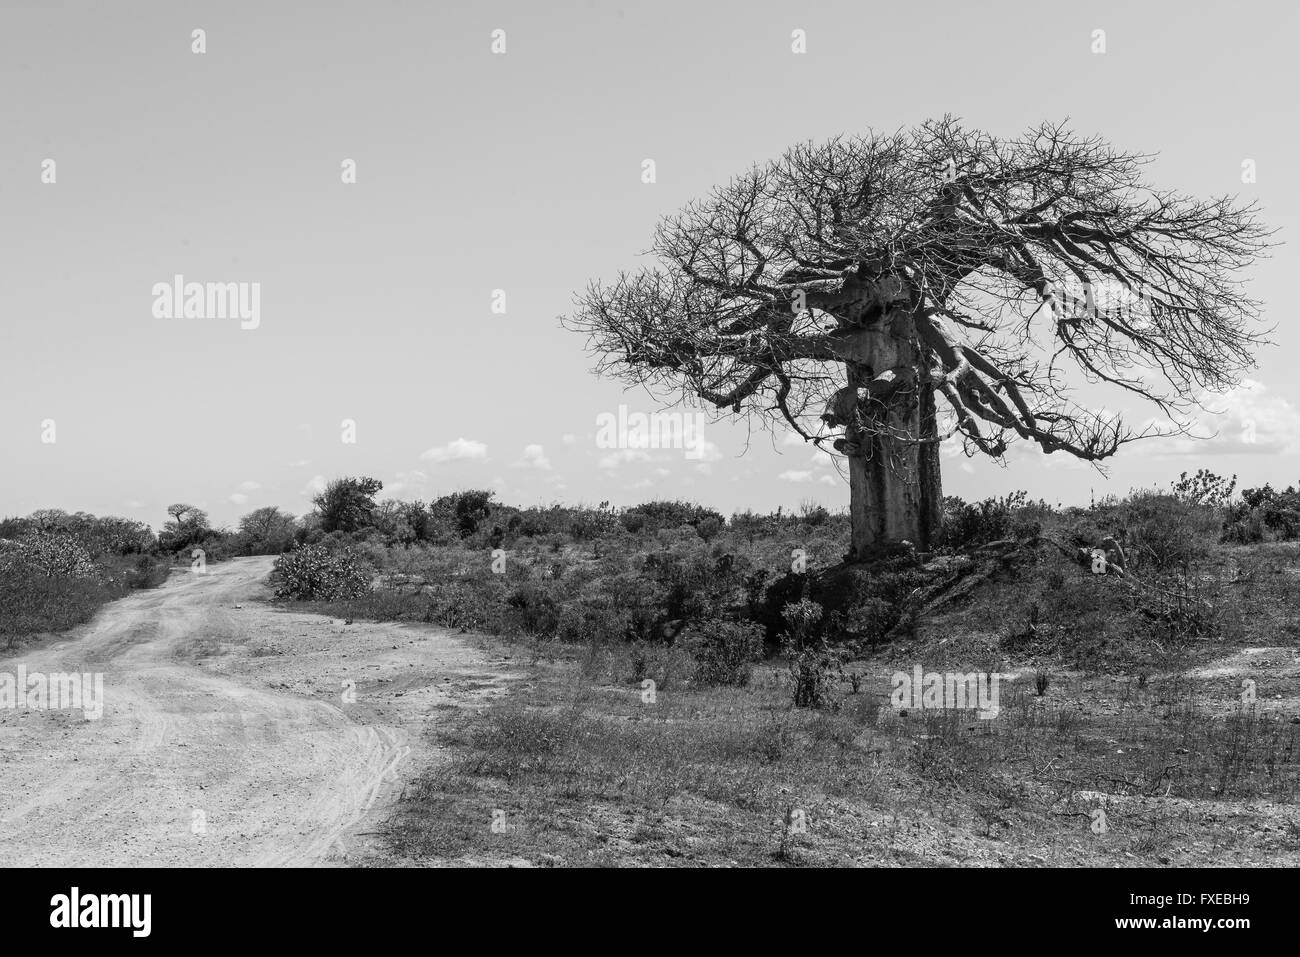 Grandi baobab circondato da savana africana con la pista sterrata accanto ad essa. in bianco e nero. Foto Stock